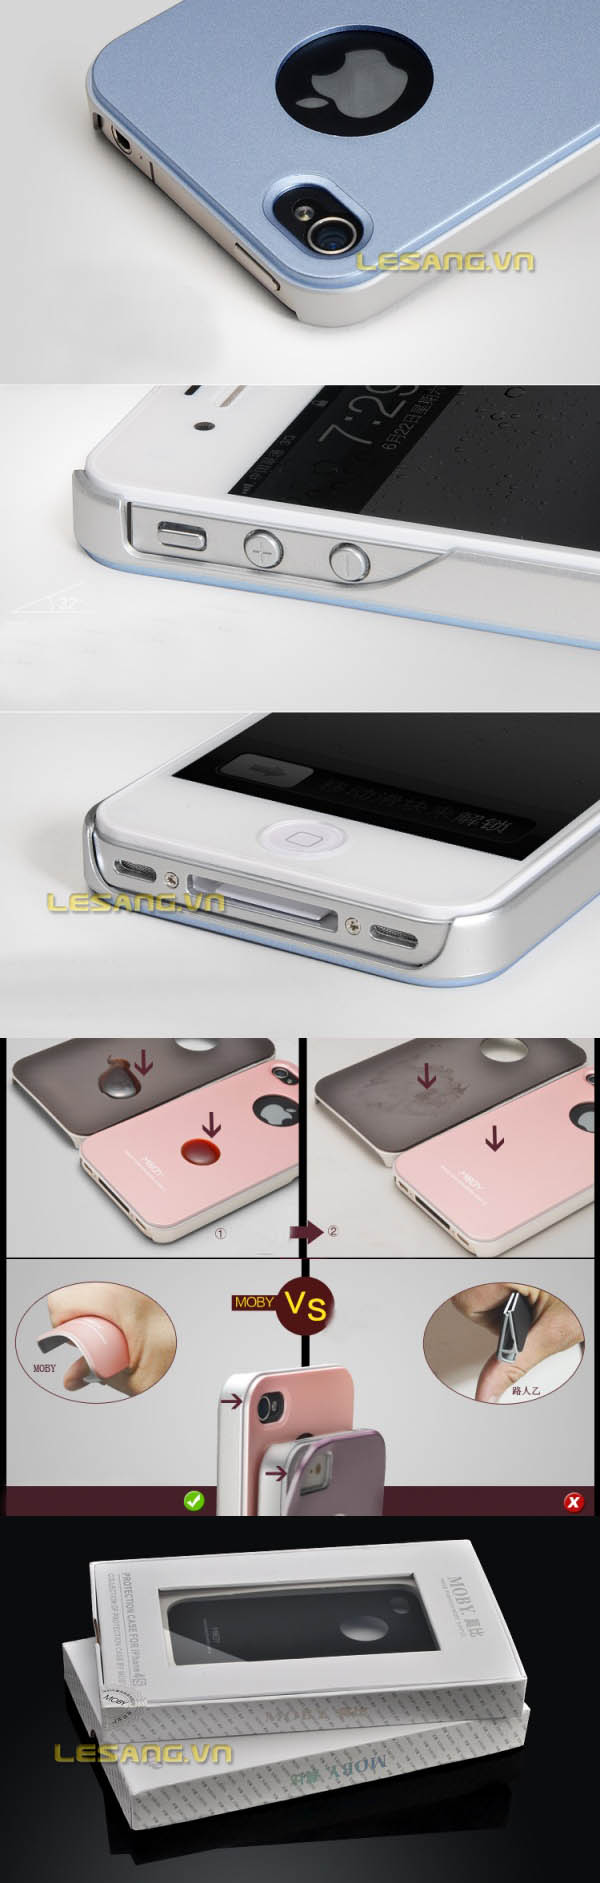 Ốp lưng Iphone 4S siêu bền